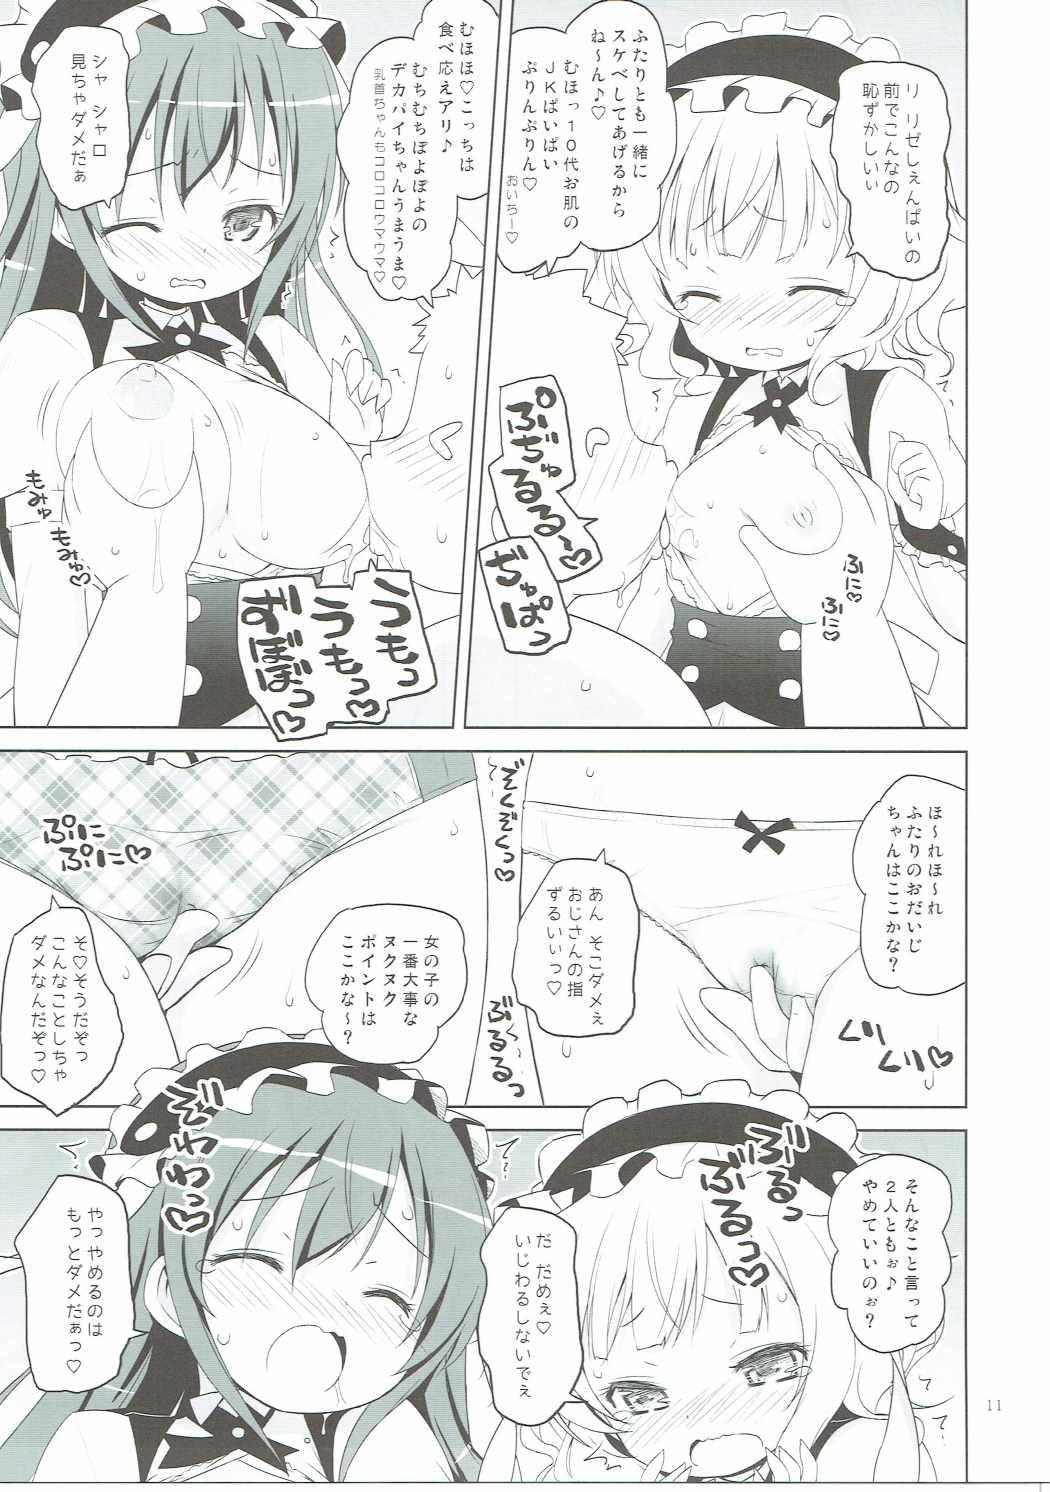 Prostituta Sharo-chan VS Caffeine Otoko - Gochuumon wa usagi desu ka Girlsfucking - Page 10